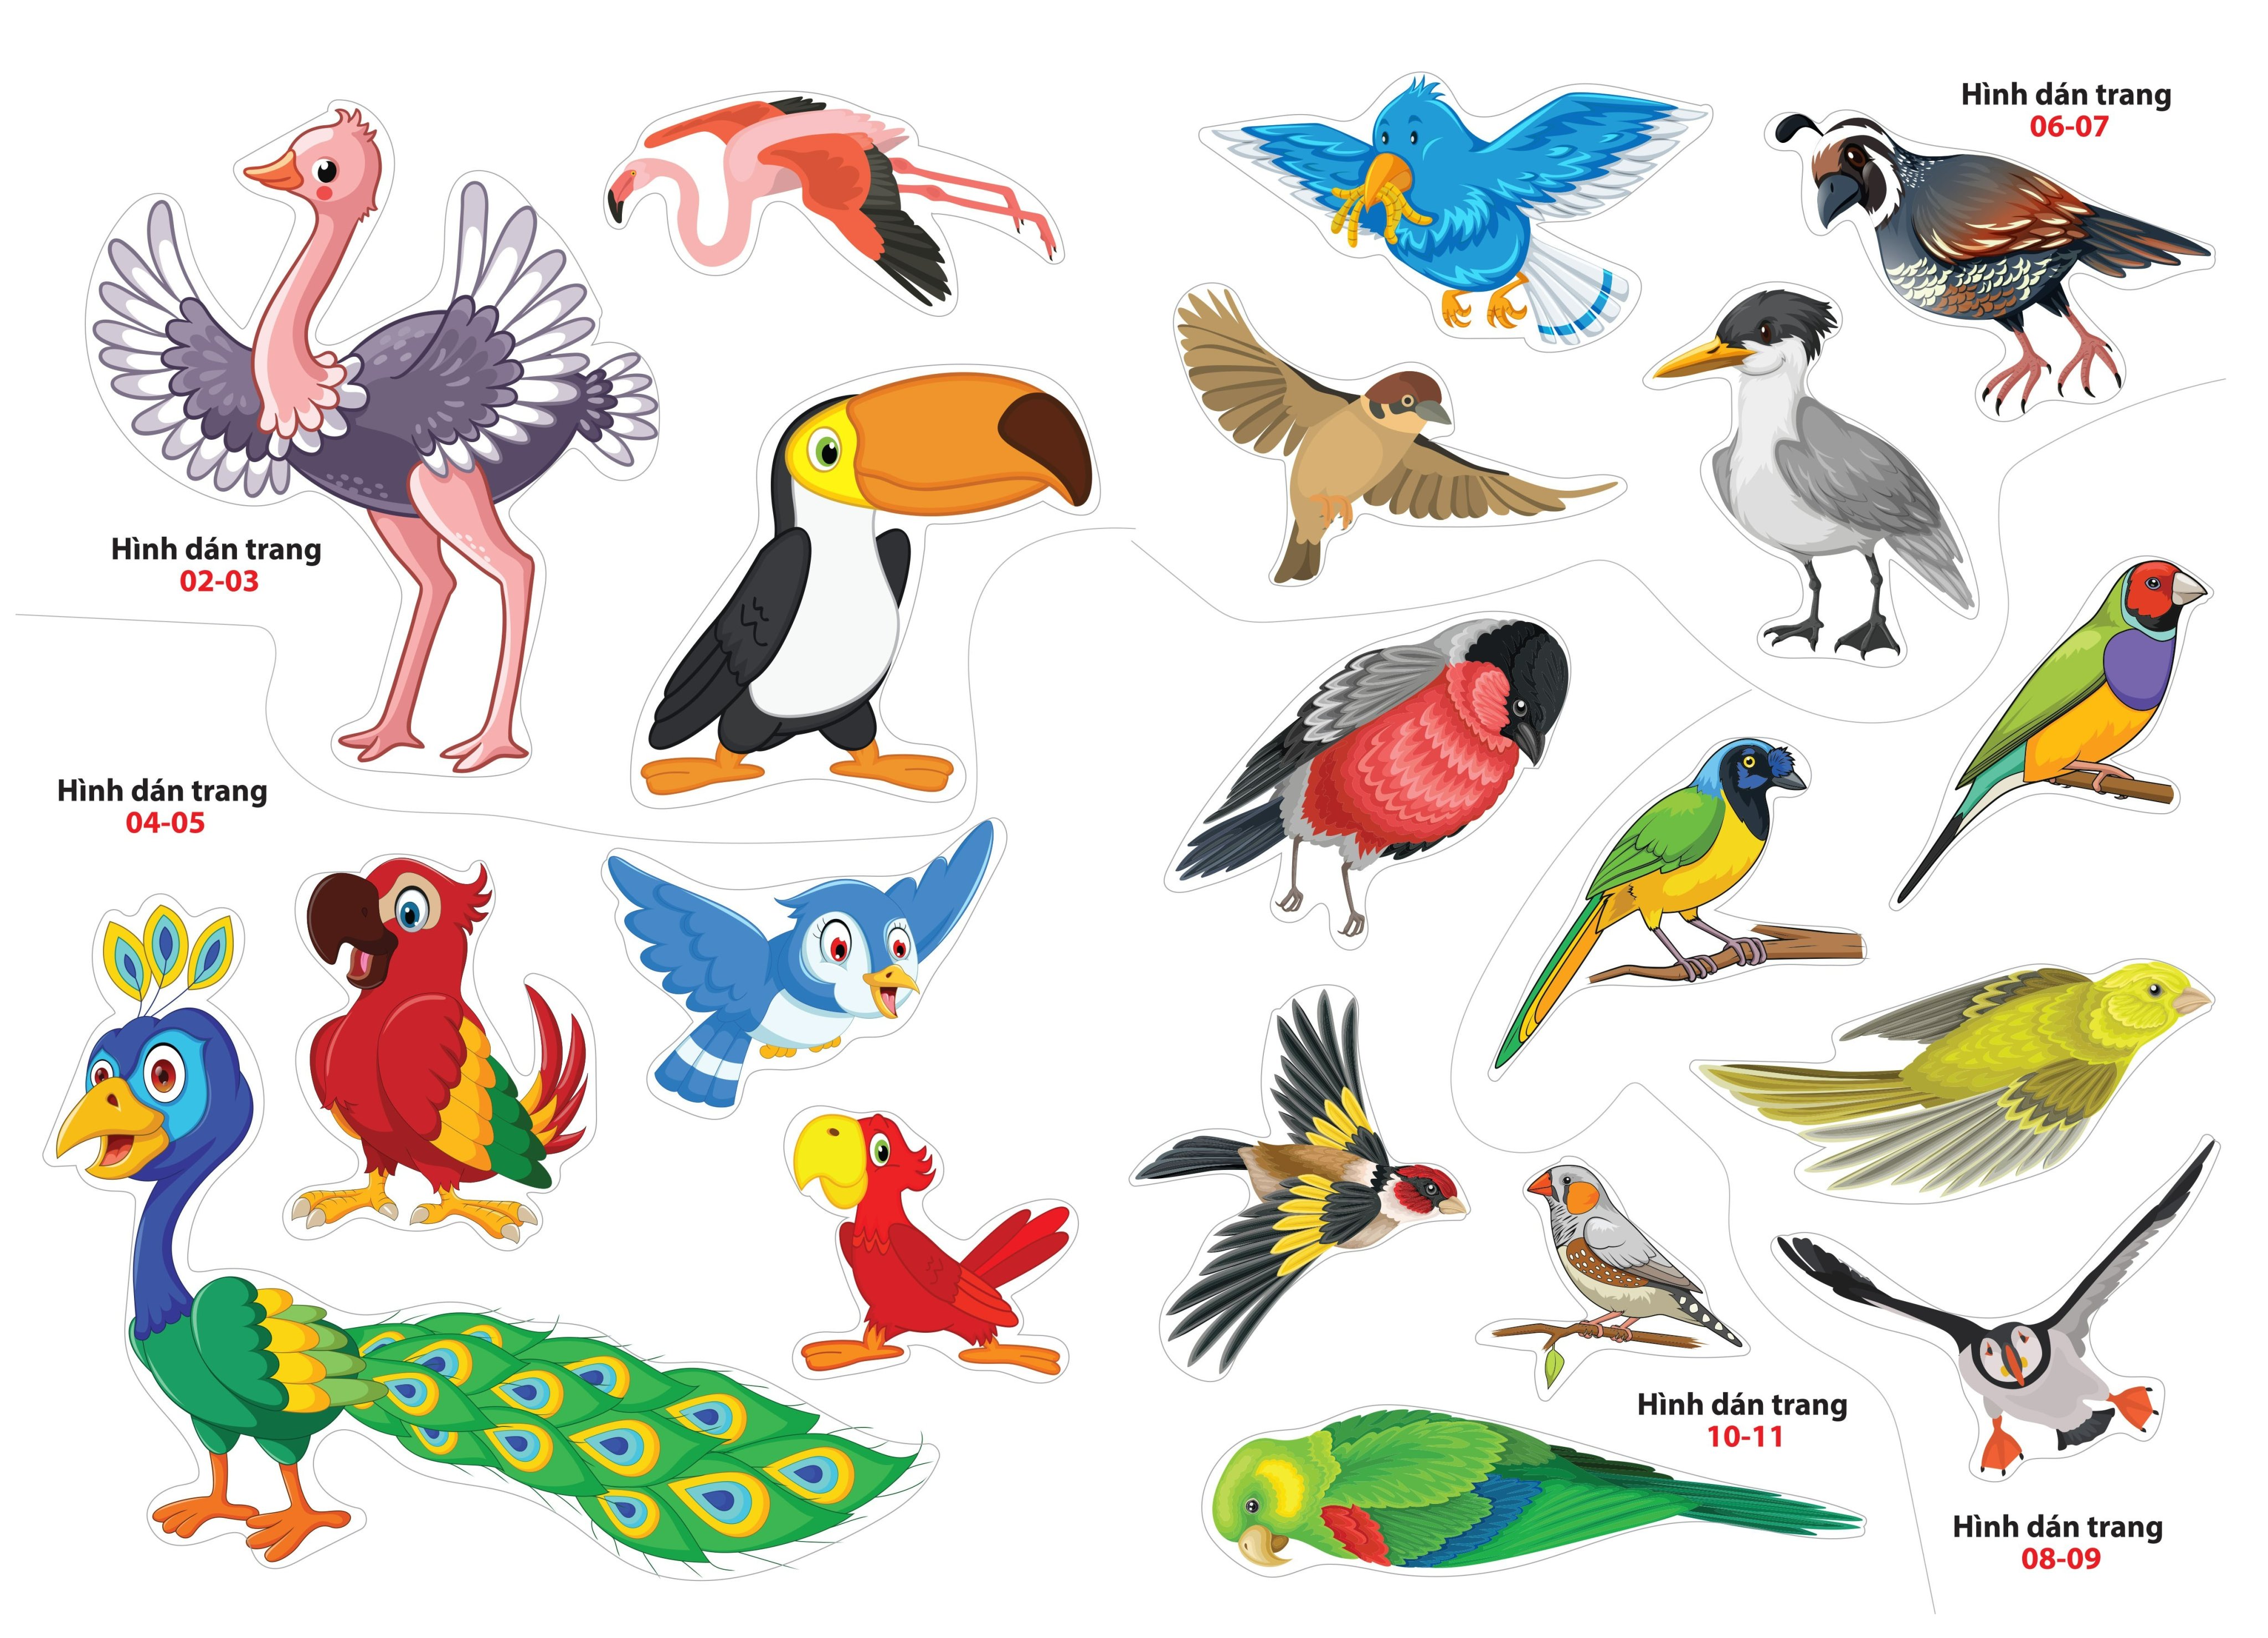 Sách - Sticker dán hình thông minh - Thế Giới Loài Chim